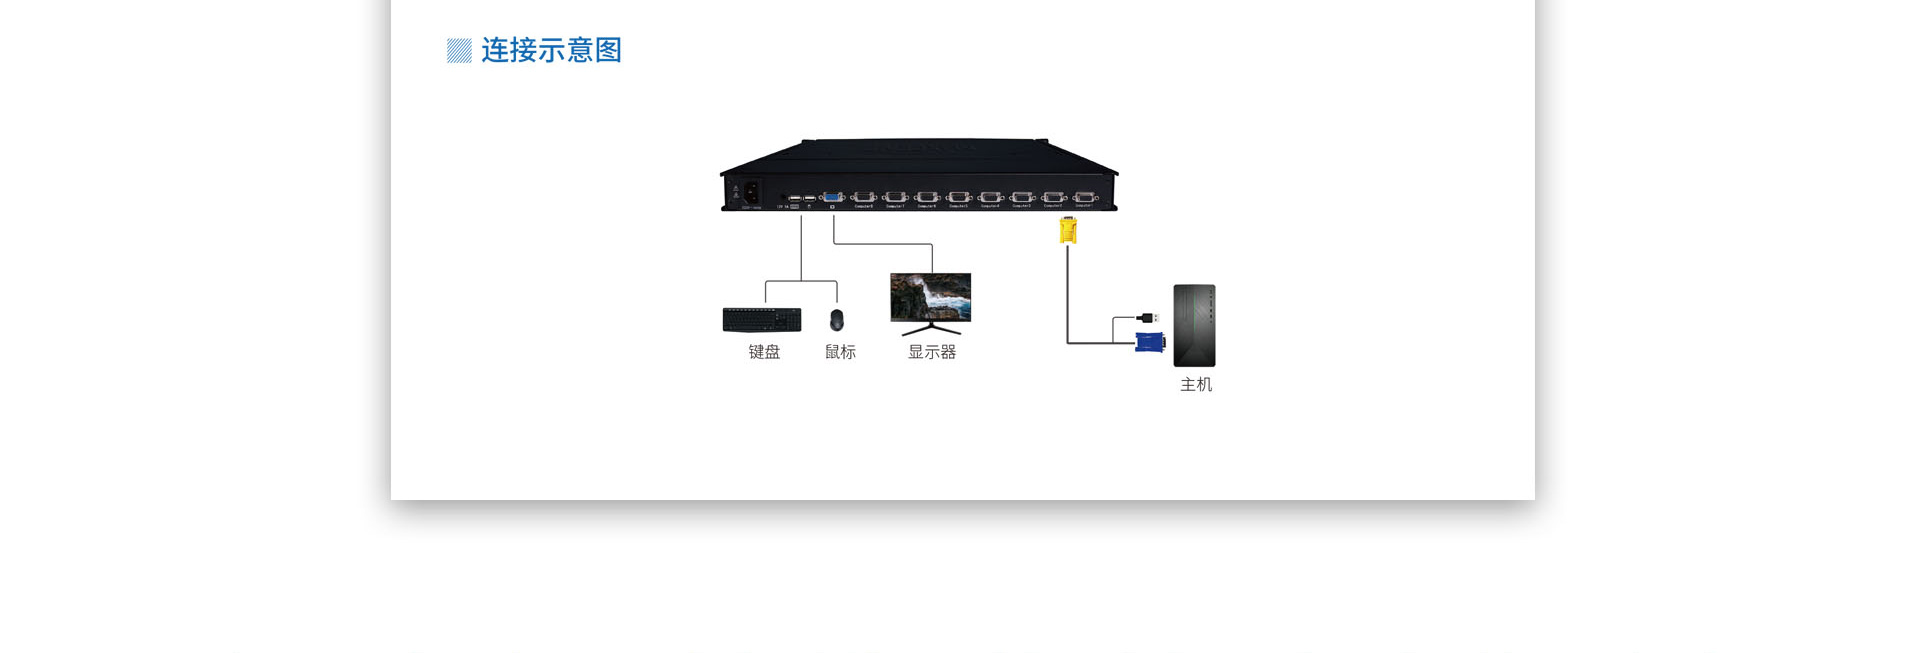 神盾卫士sla和slc系列产品kvm切换器连接示意图